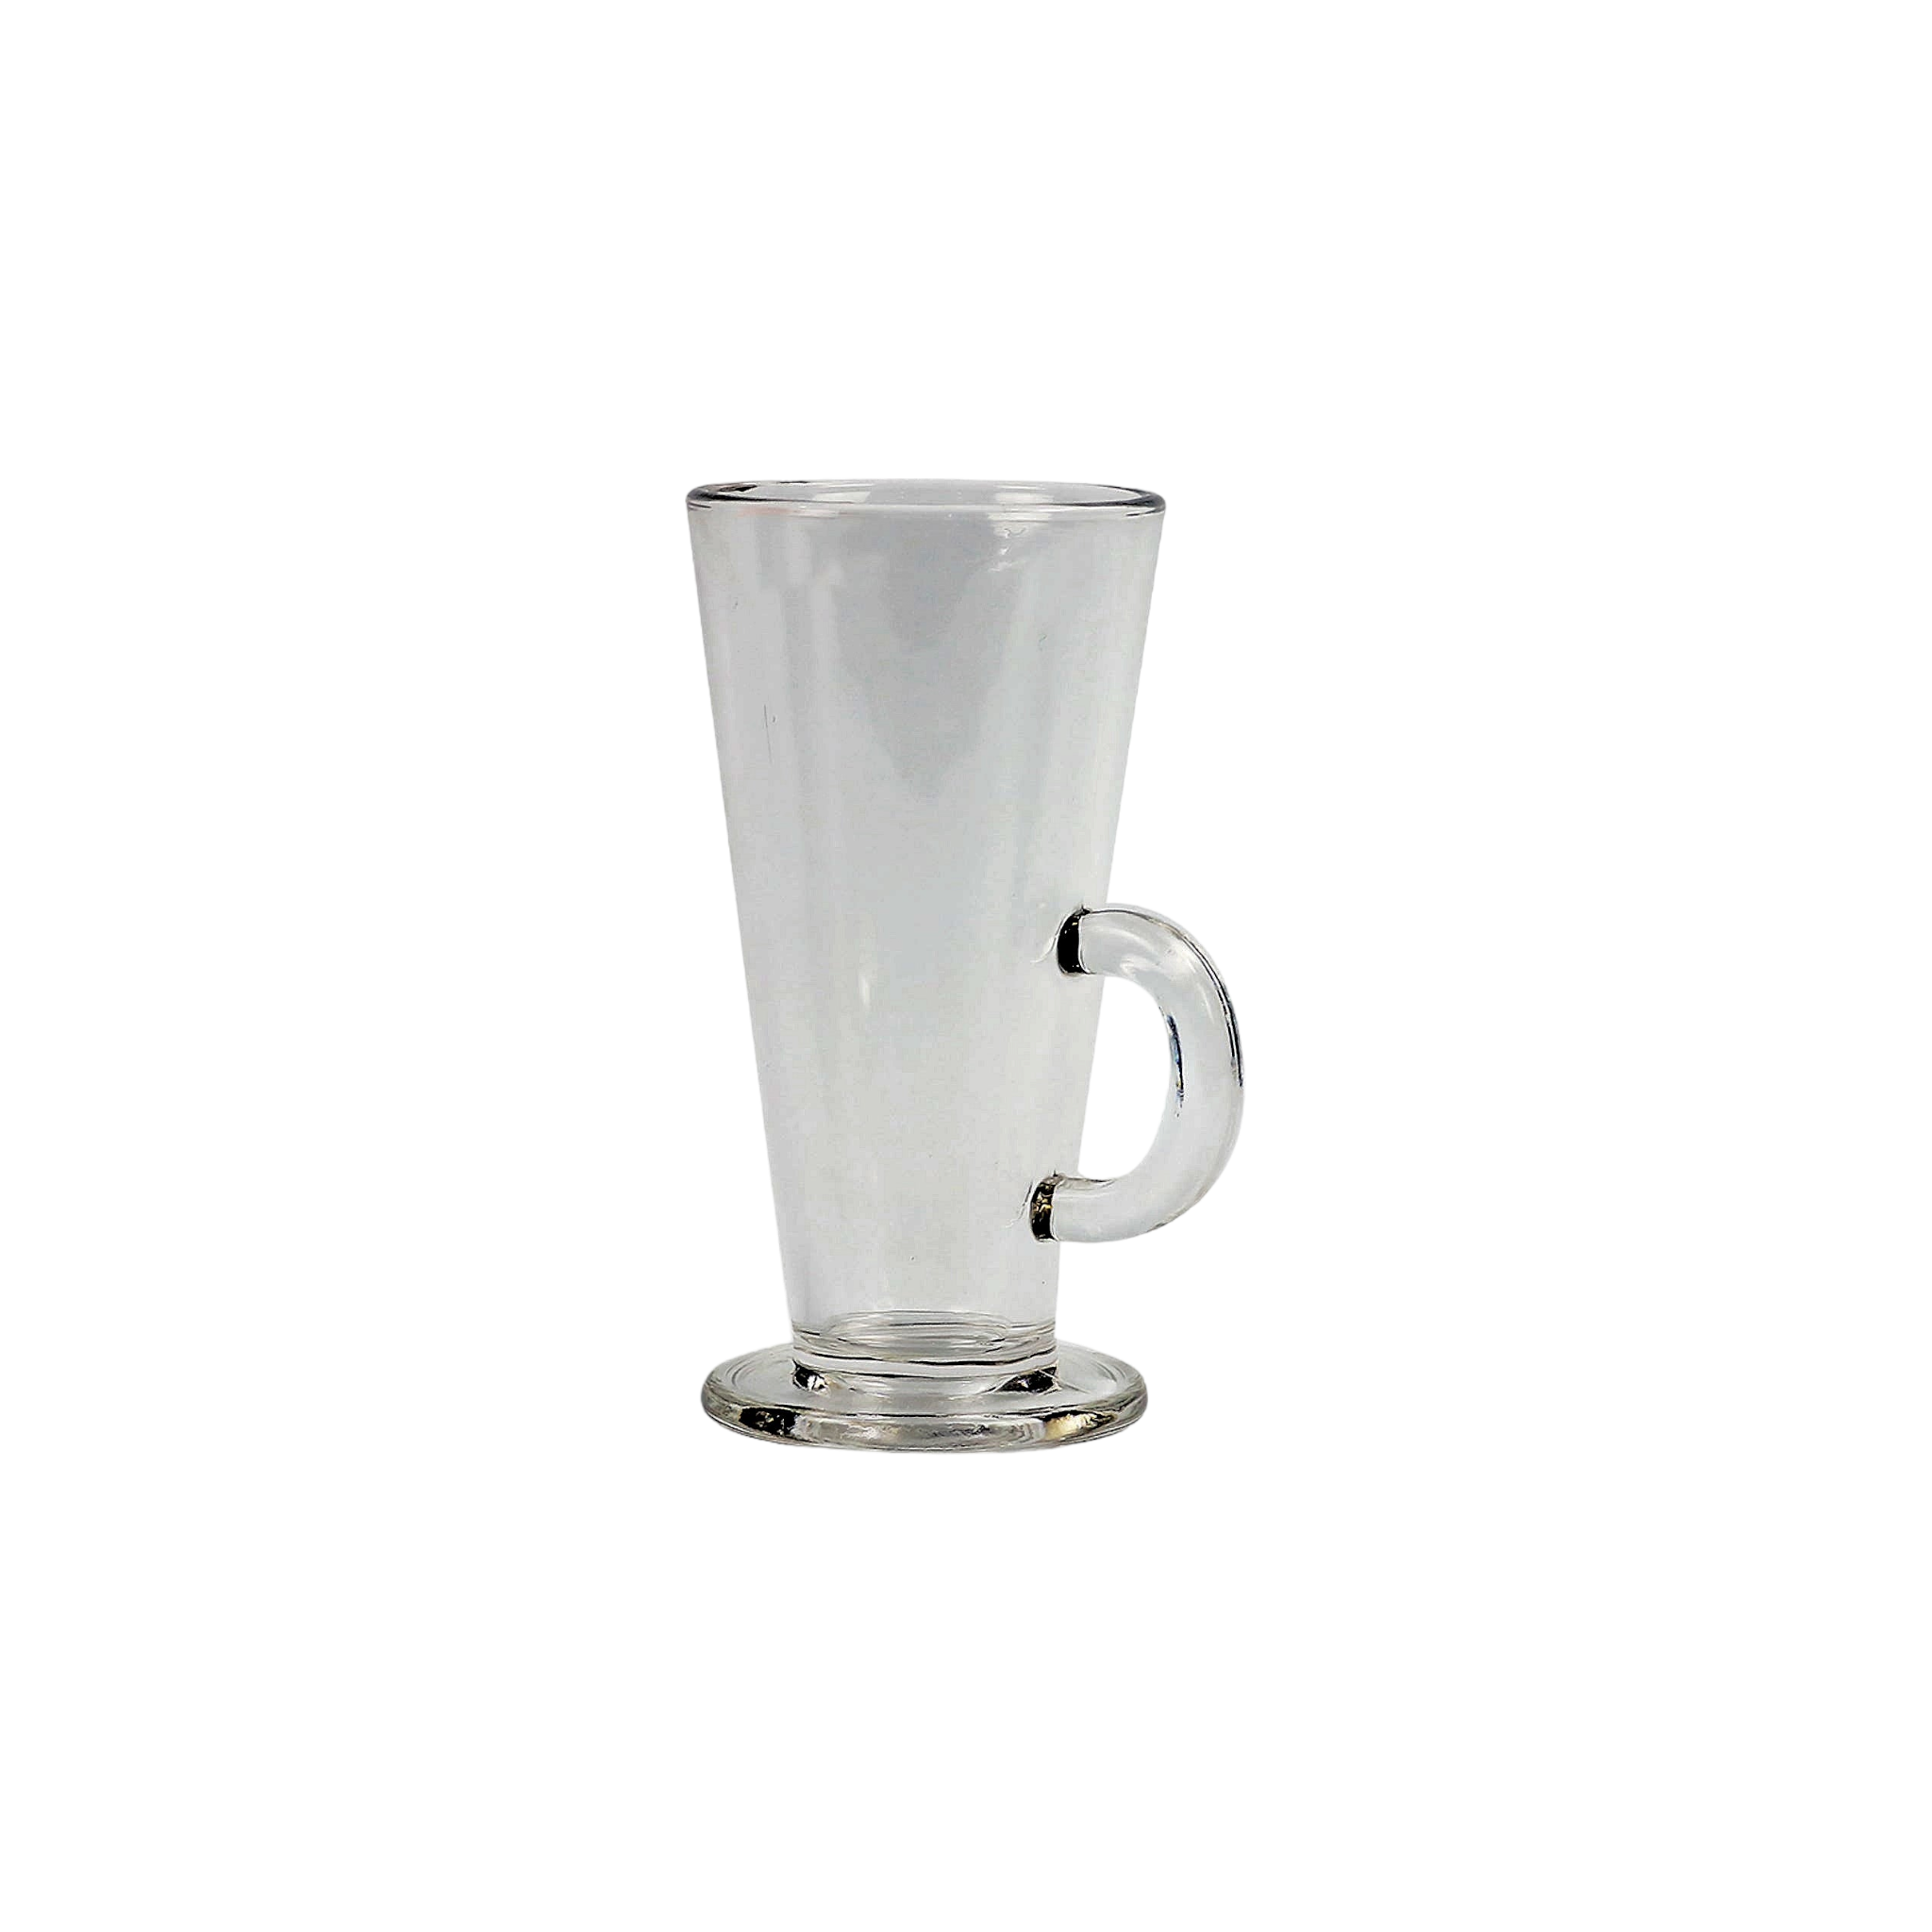 V-Shaped Café Latte Coffee Mug 280ml 6pc 8x14.5cm